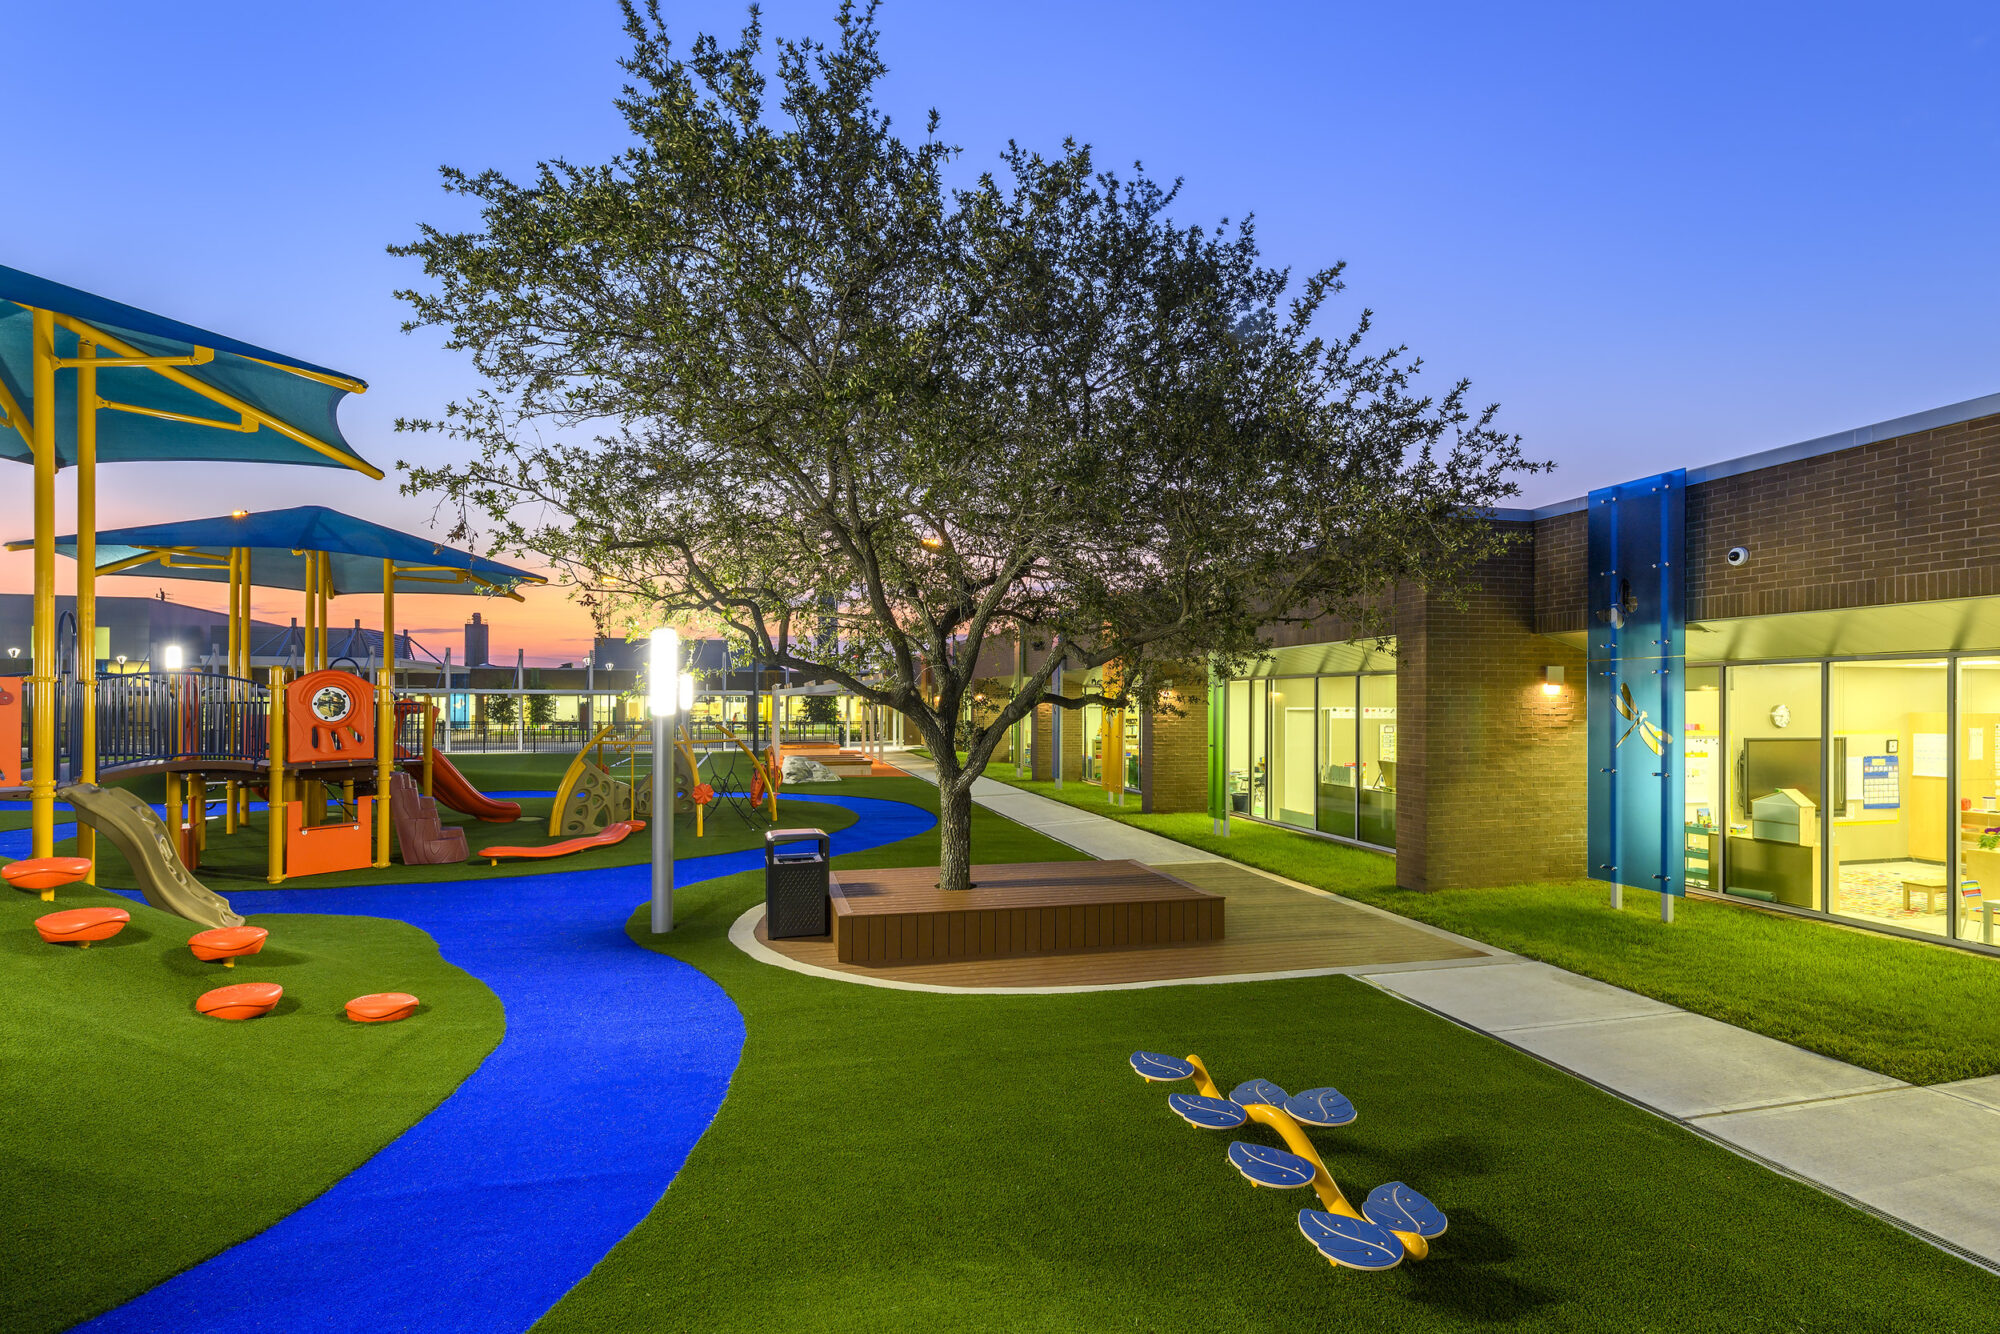 Artificial grass school yard playground